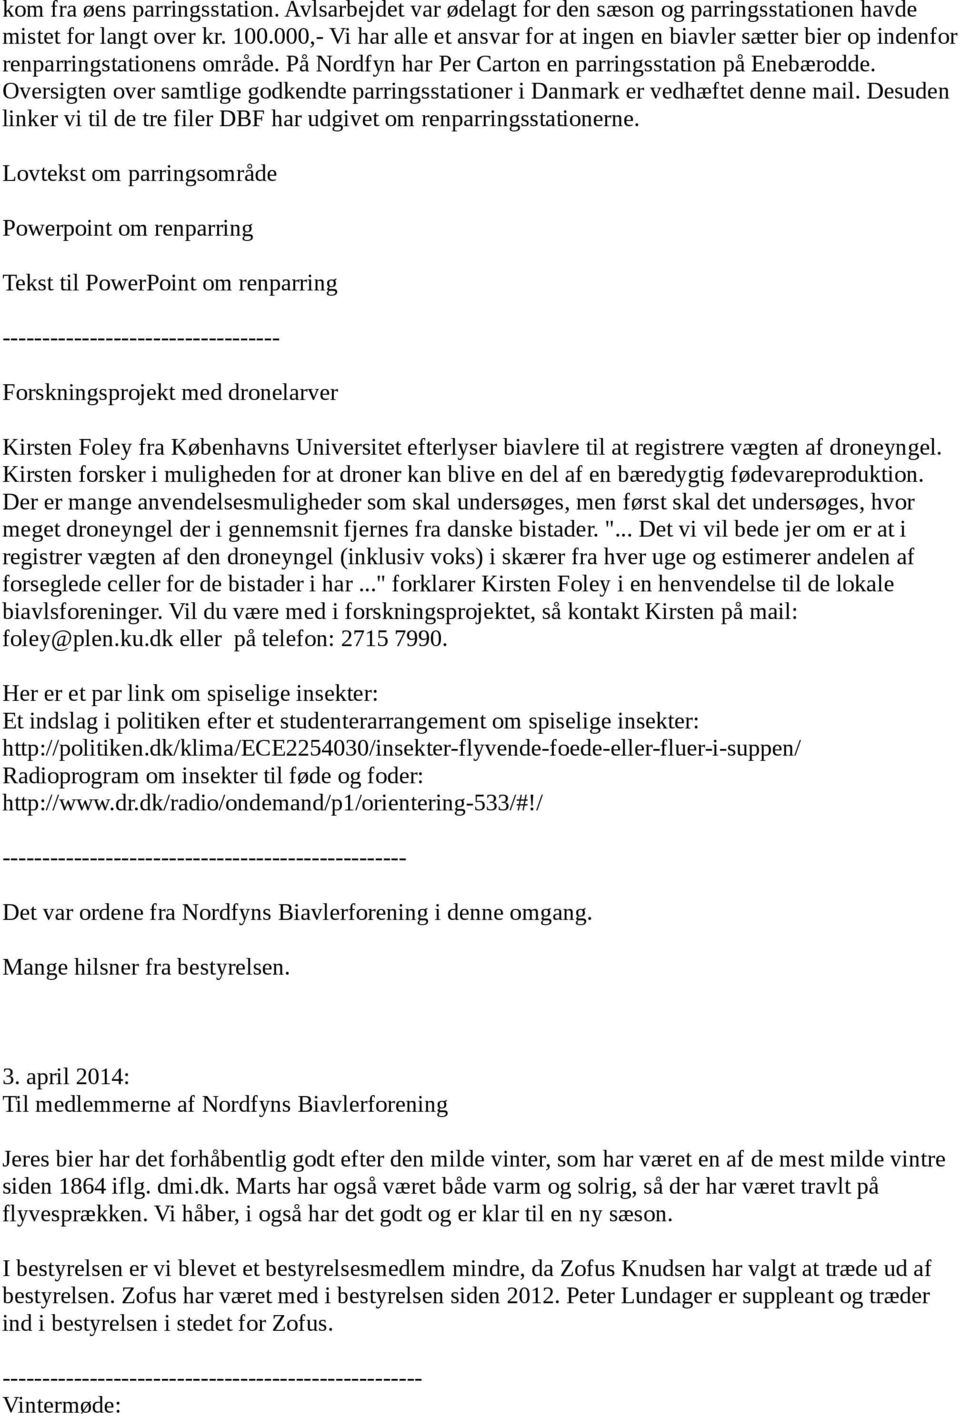 Oversigten over samtlige godkendte parringsstationer i Danmark er vedhæftet denne mail. Desuden linker vi til de tre filer DBF har udgivet om renparringsstationerne.